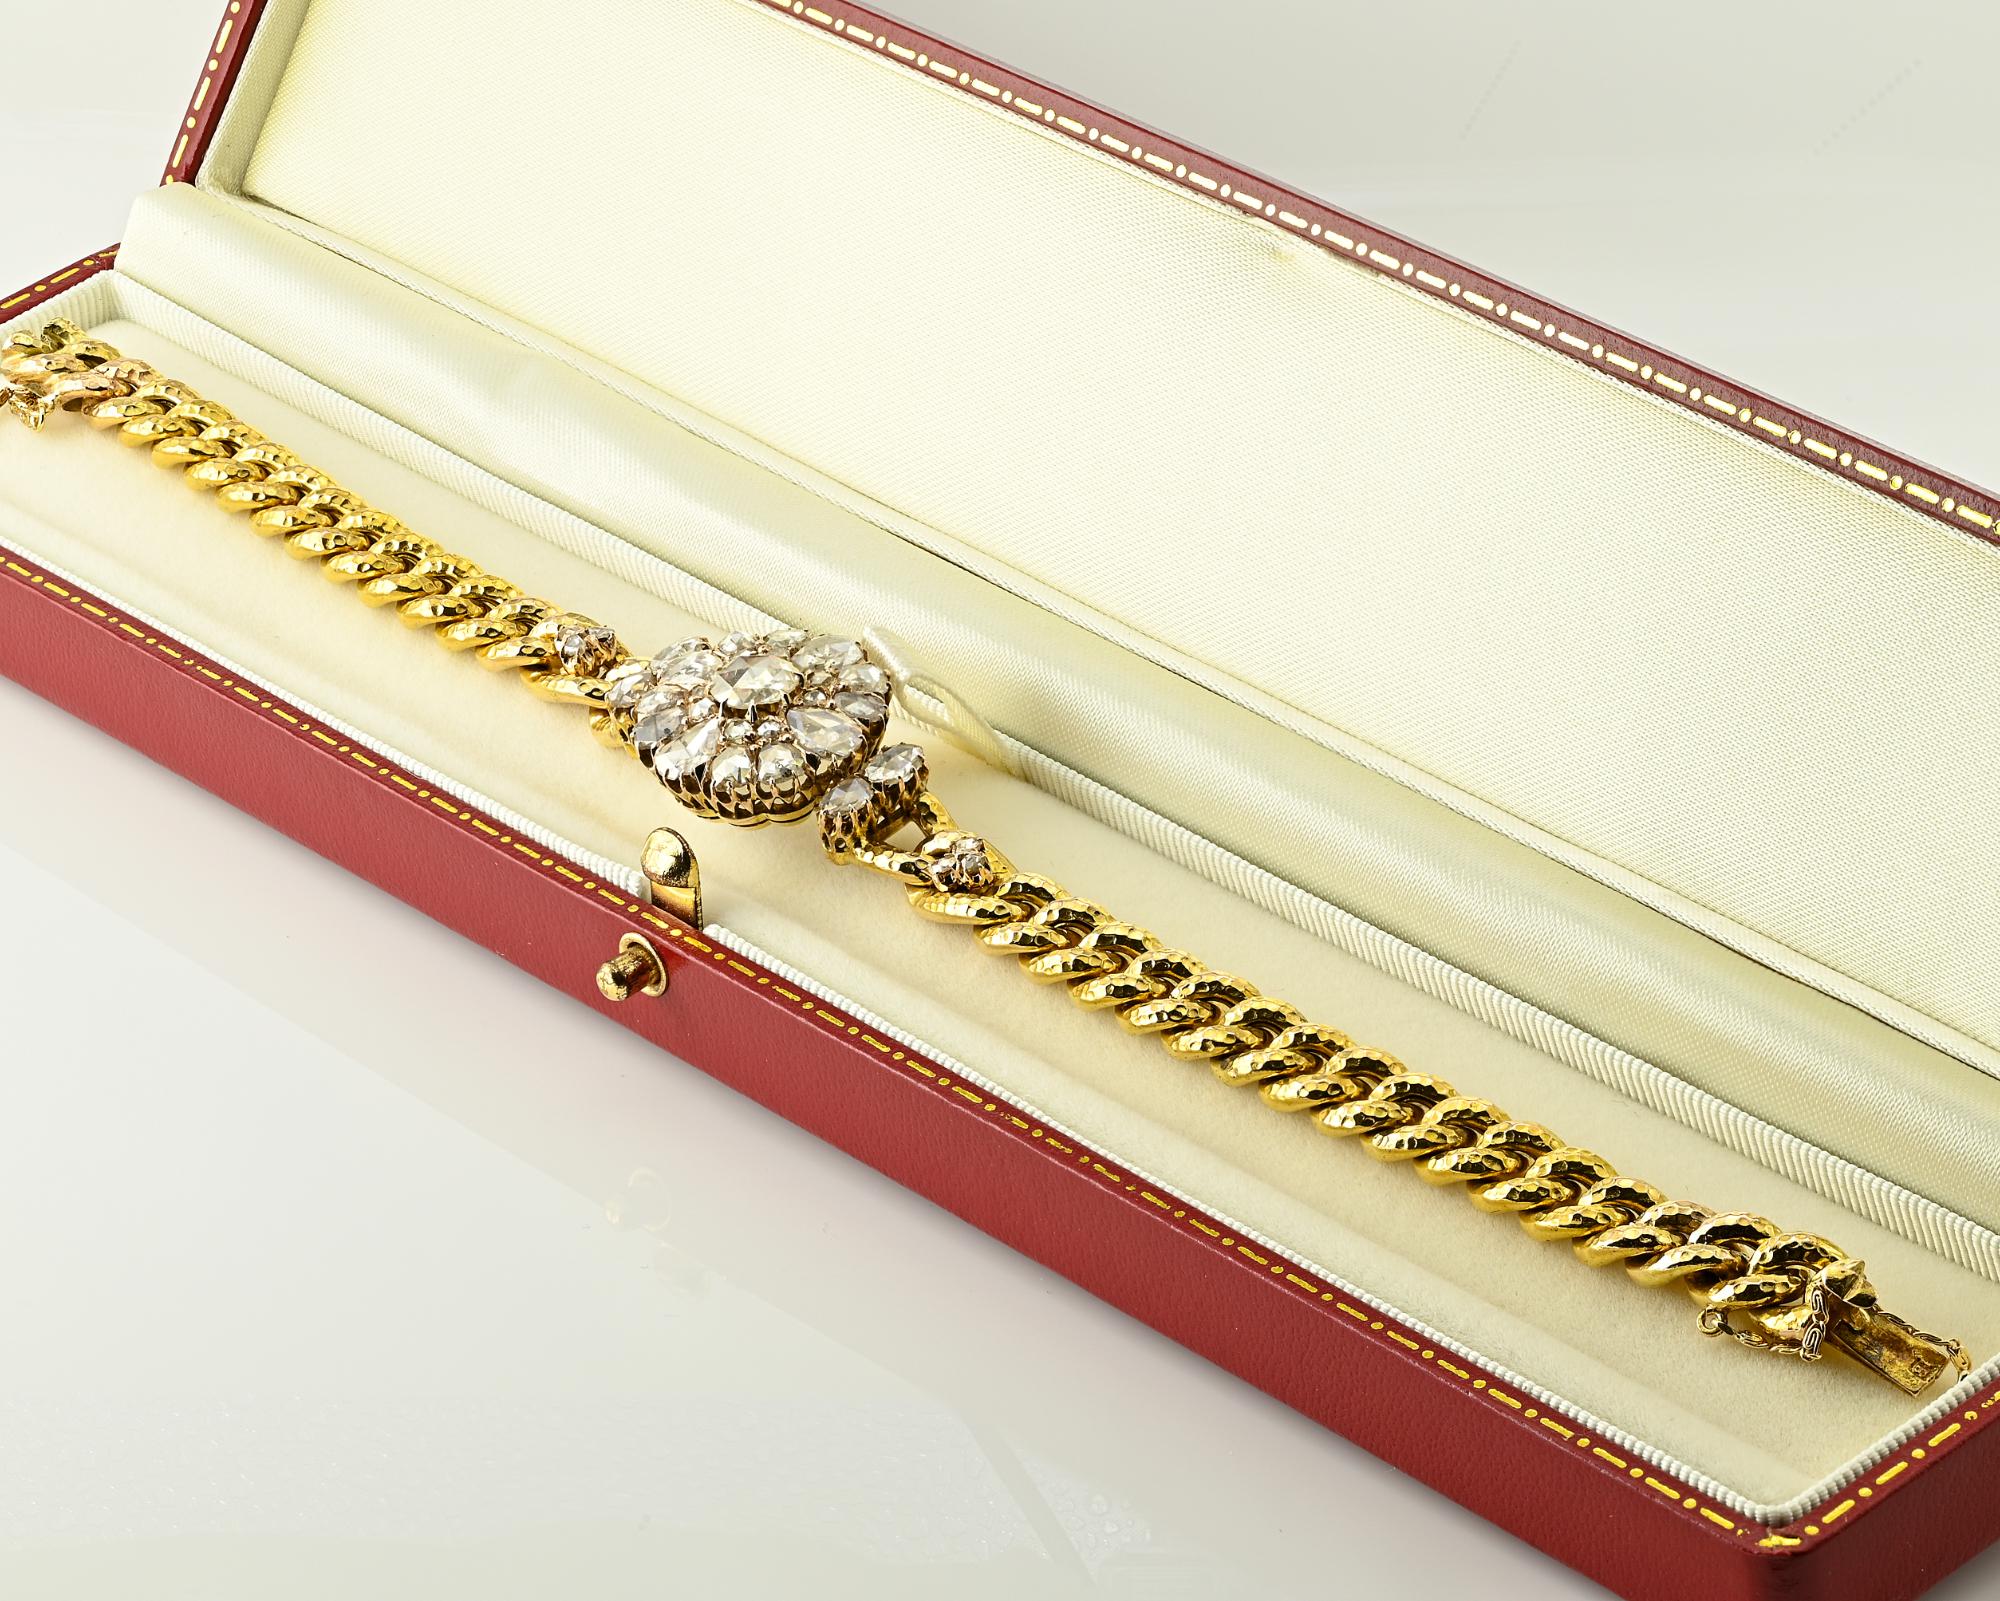 Dieses atemberaubende antike Armband ist 1870 ca.
Wunderschönes originales Armband aus der viktorianischen Zeit mit Diamant in der Mitte in Form eines Gänseblümchens, das in reinster viktorianischer Tradition von Hand aus massivem 10 KT Gelbgold